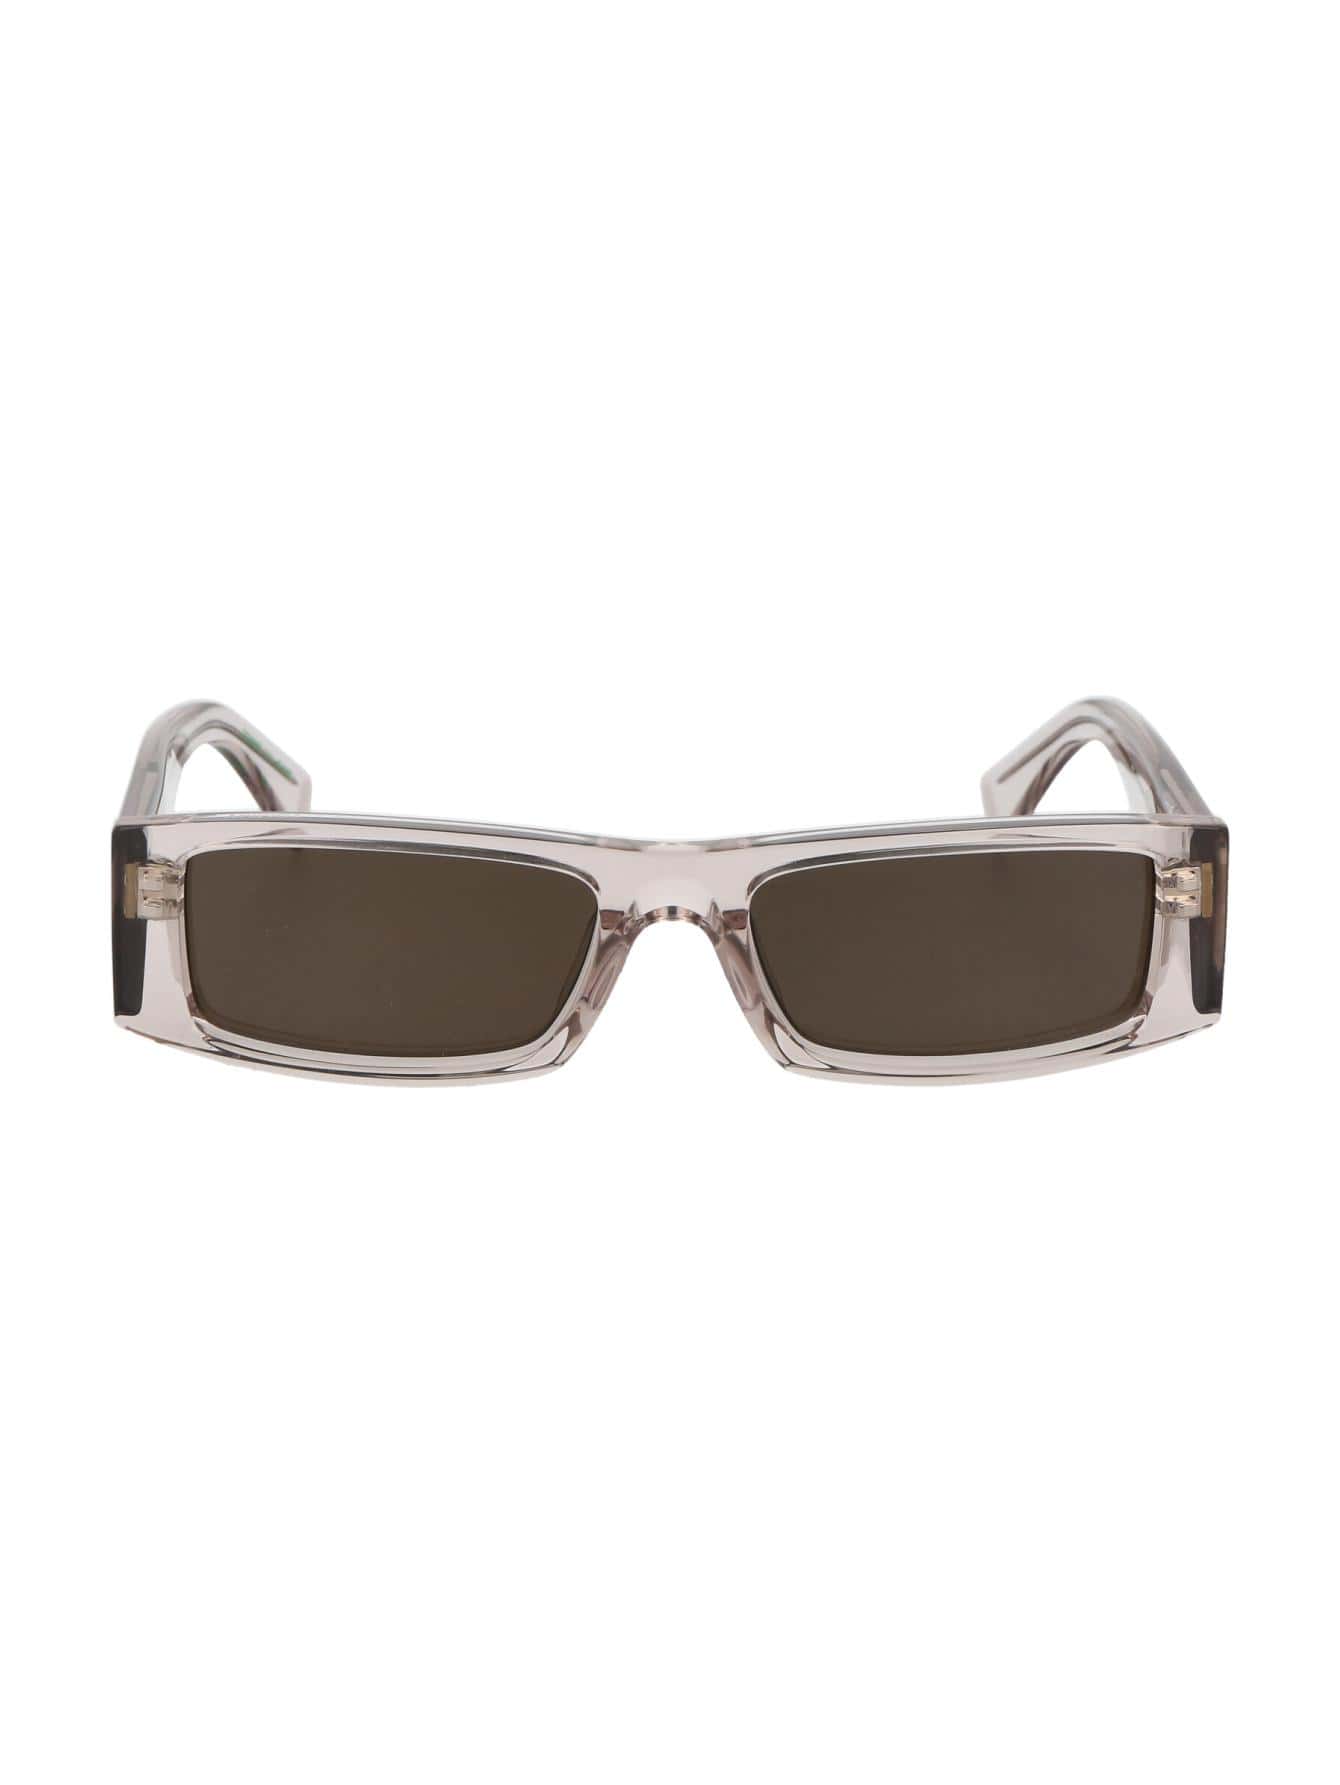 Мужские солнцезащитные очки Tommy Hilfiger DECOR TJ0092S10A70, многоцветный солнцезащитные очки tommy hilfiger черный